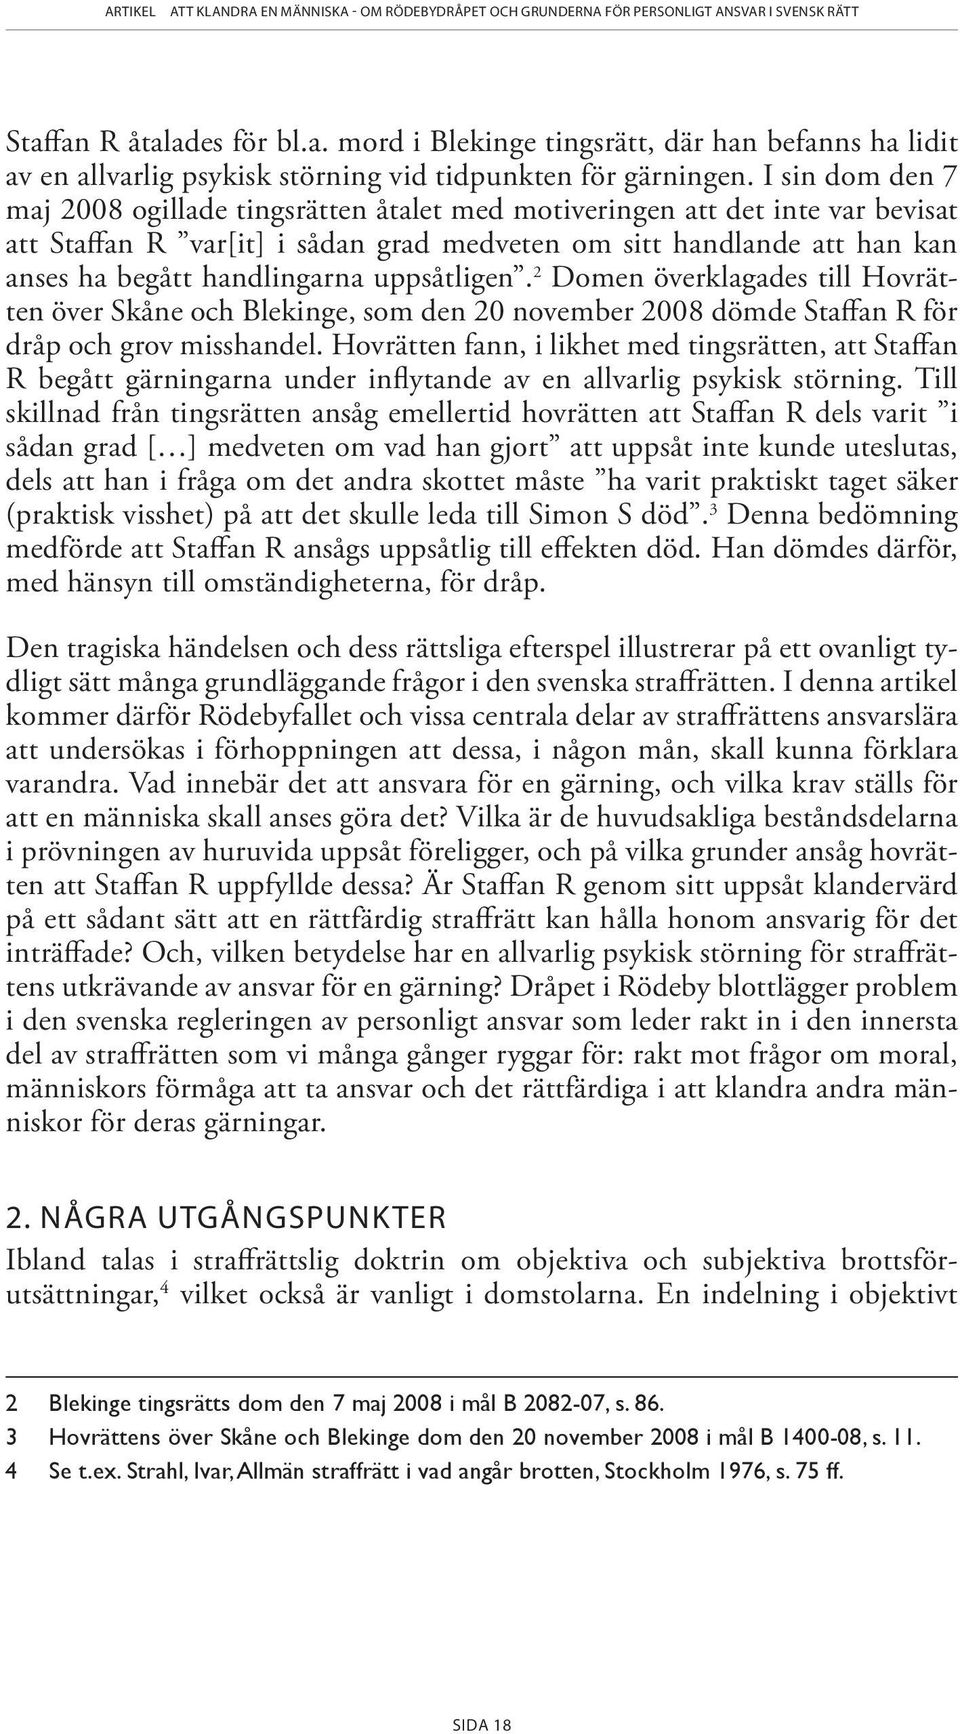 uppsåtligen. 2 Domen överklagades till Hovrätten över Skåne och Blekinge, som den 20 november 2008 dömde Staffan R för dråp och grov misshandel.